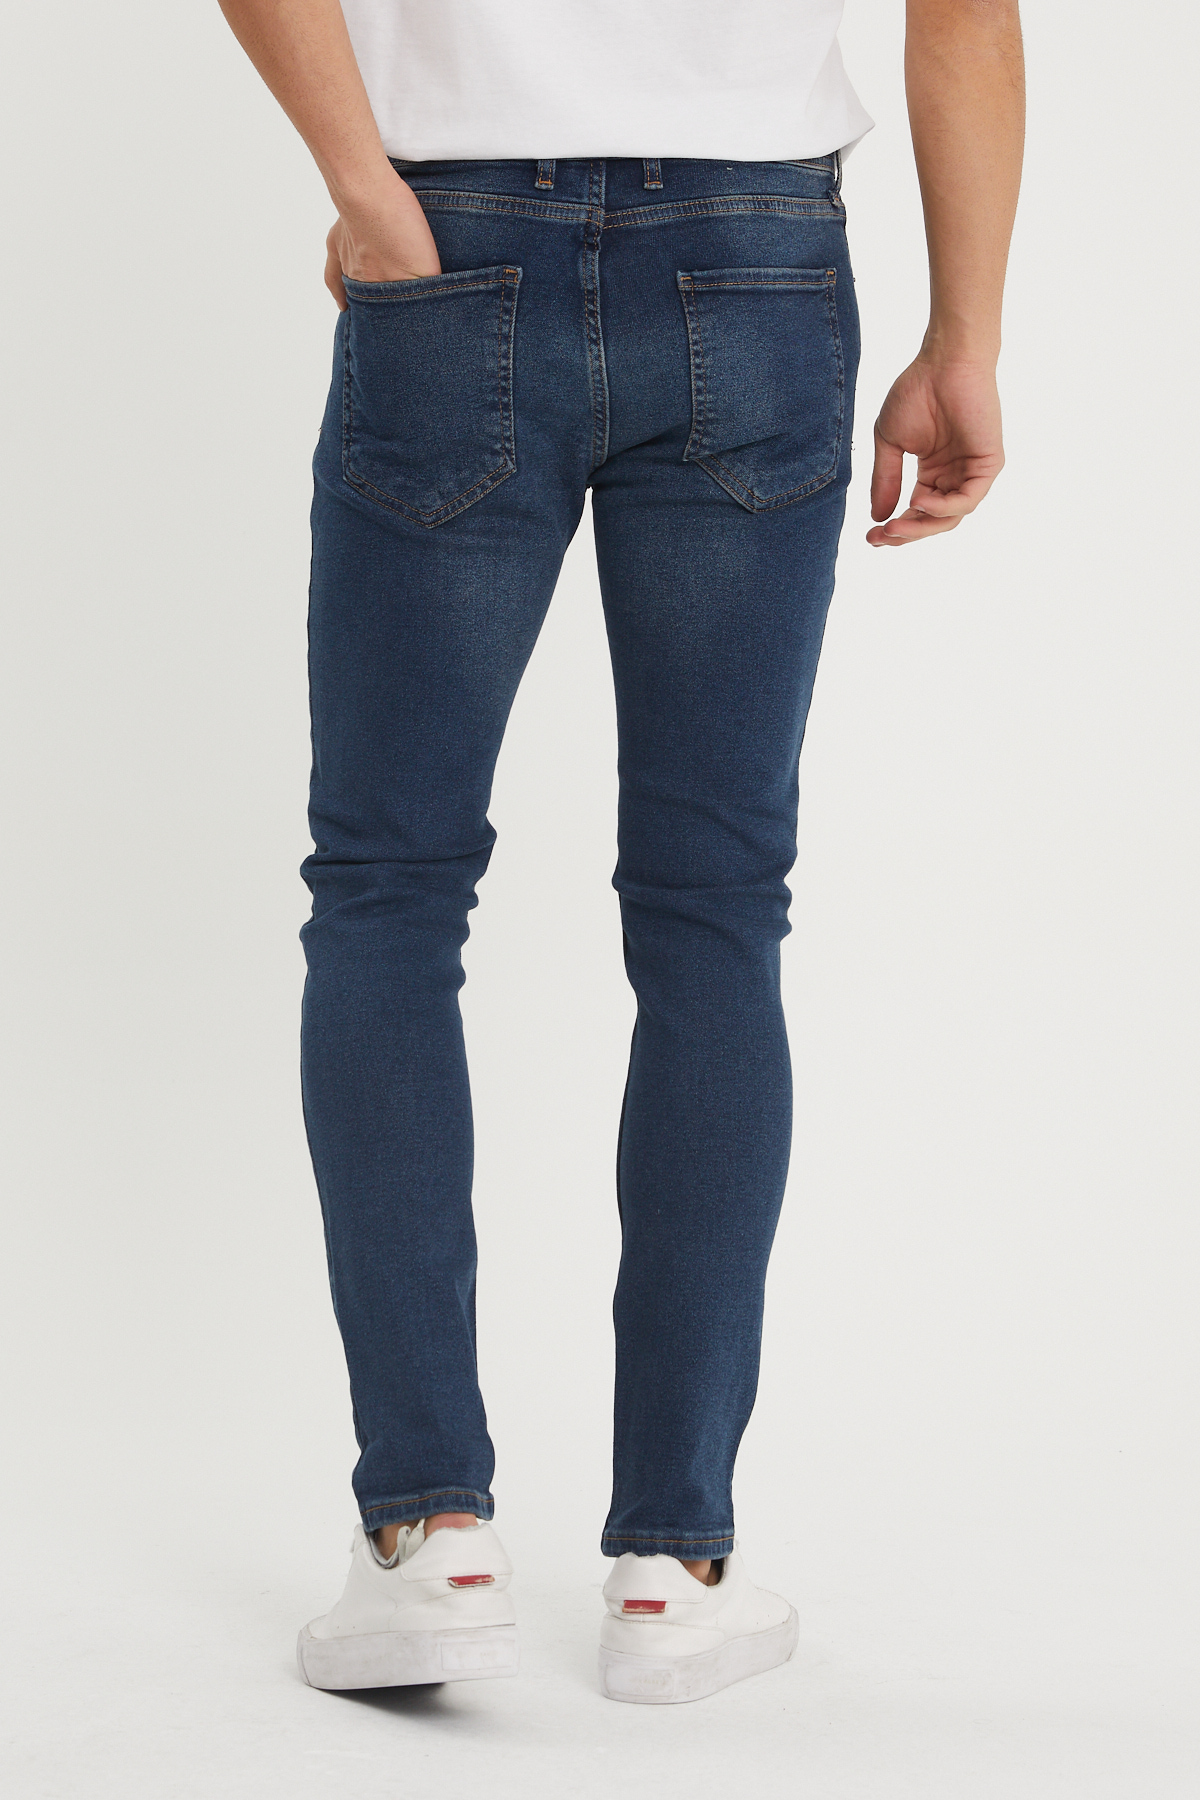 Yıkamalı Lacivert Slim Fit Jean Pantolon 1KXE5-44351-48 - 3